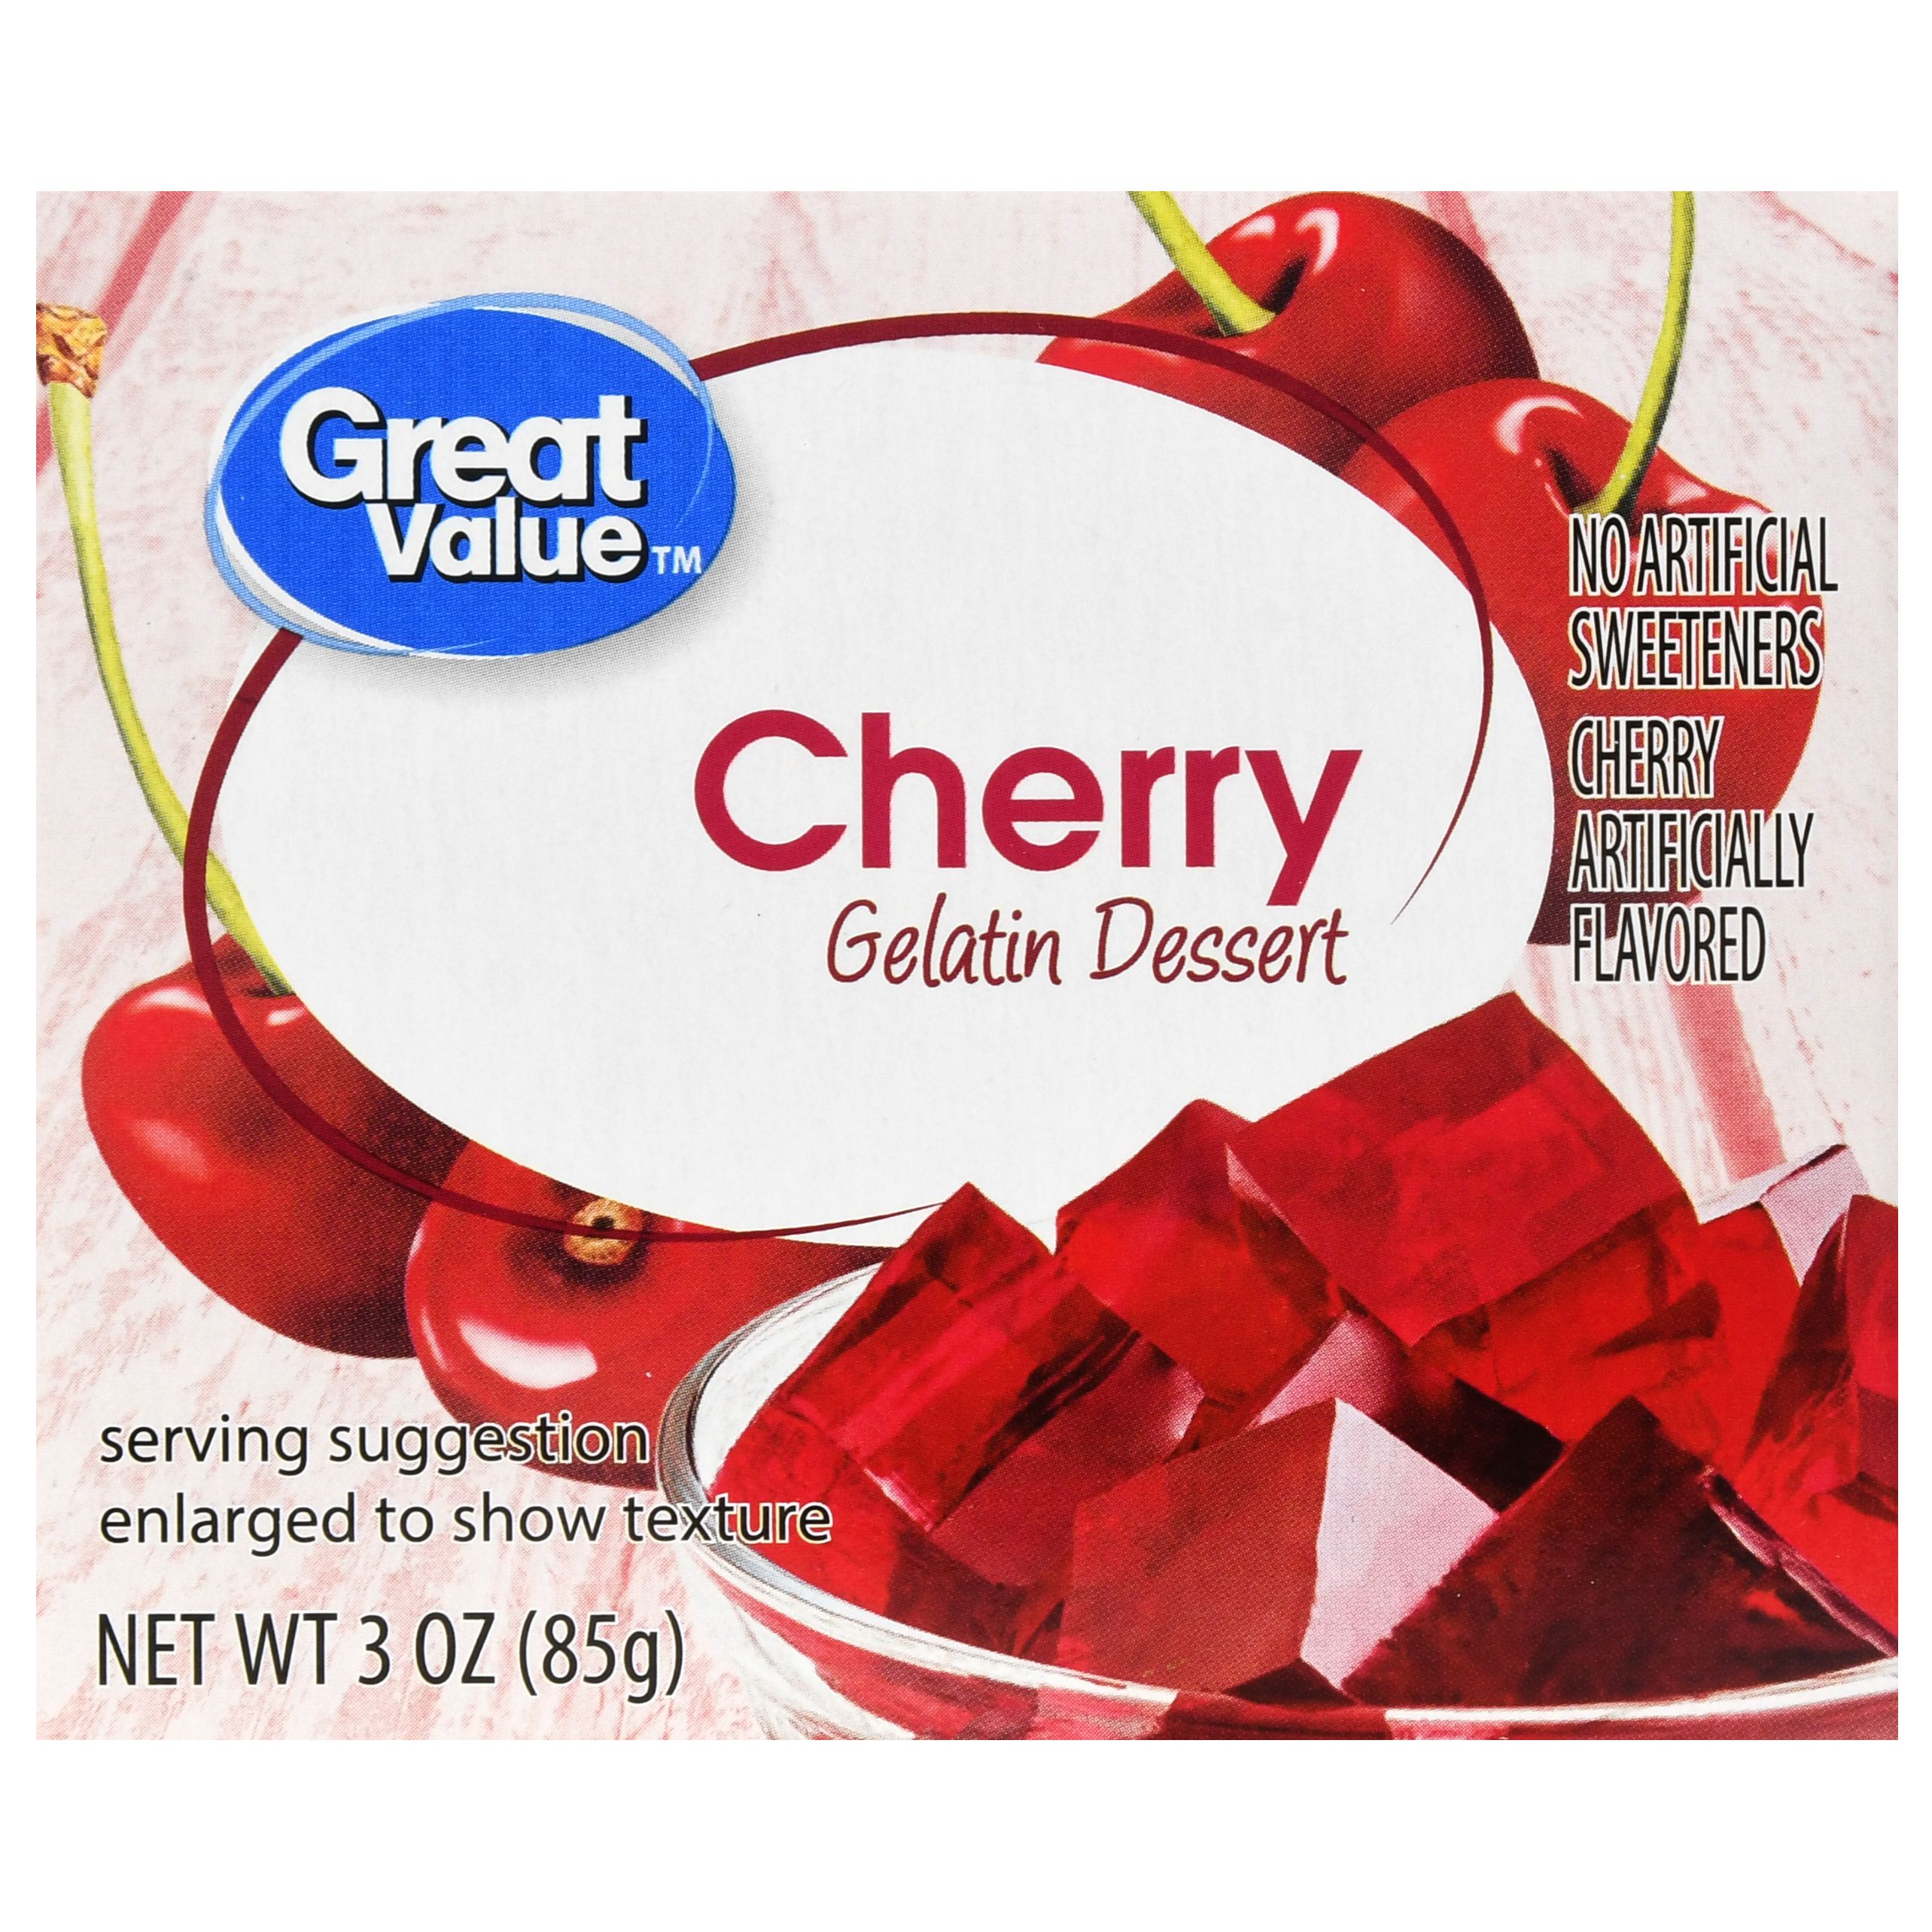 Great Value Cherry Gelatin Dessert, 3 Oz Image